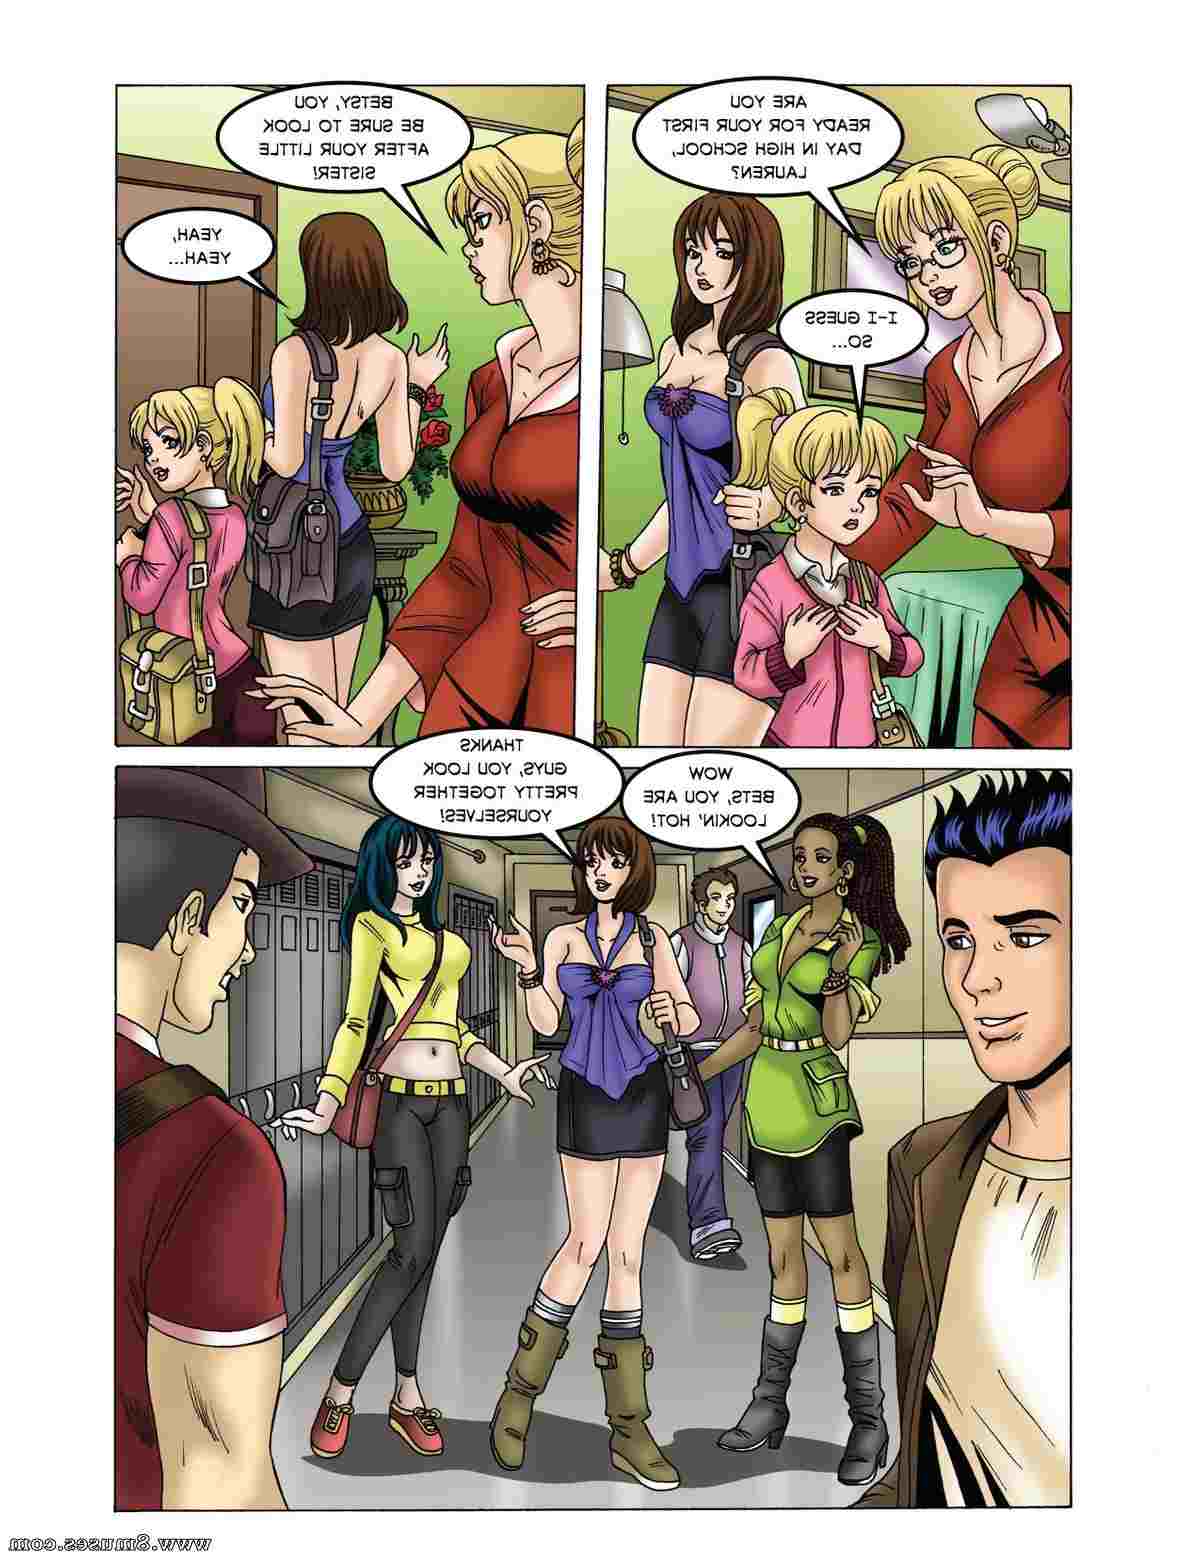 DreamTales-Comics/High-School-Confidental High_School_Confidental__8muses_-_Sex_and_Porn_Comics_4.jpg